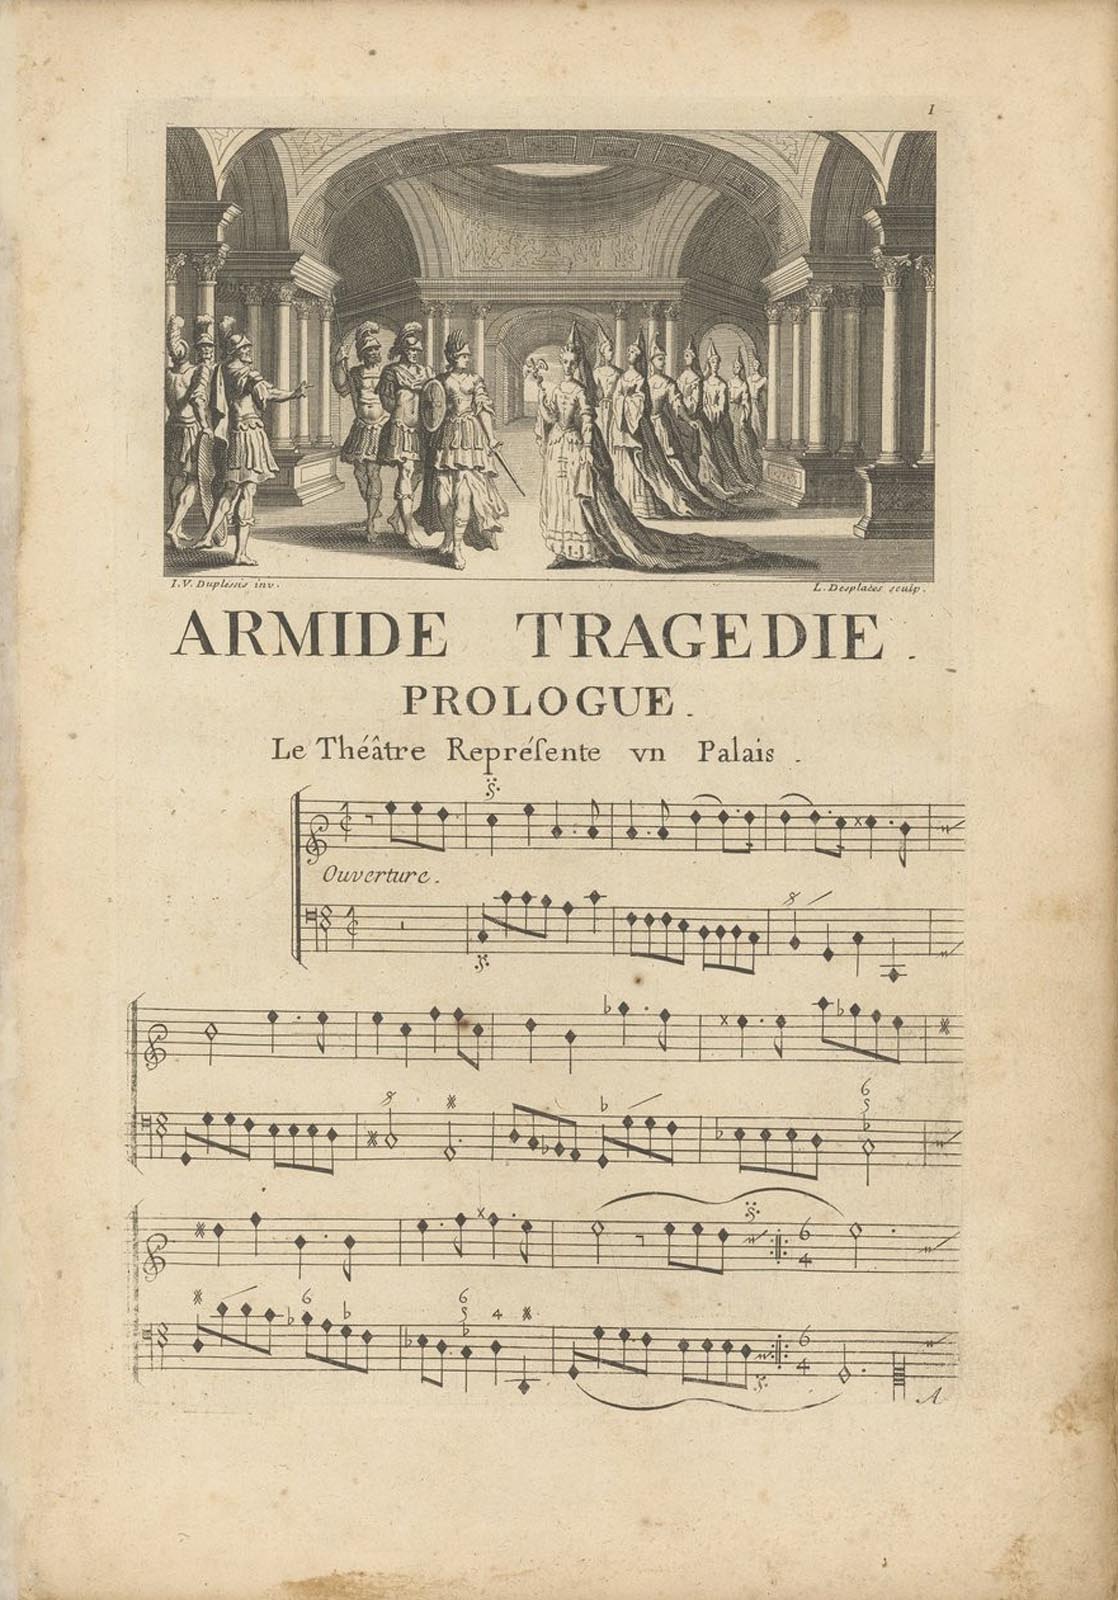 Image d'une page manuscrite illustrée de la partition de l'opéra Armide de Lully